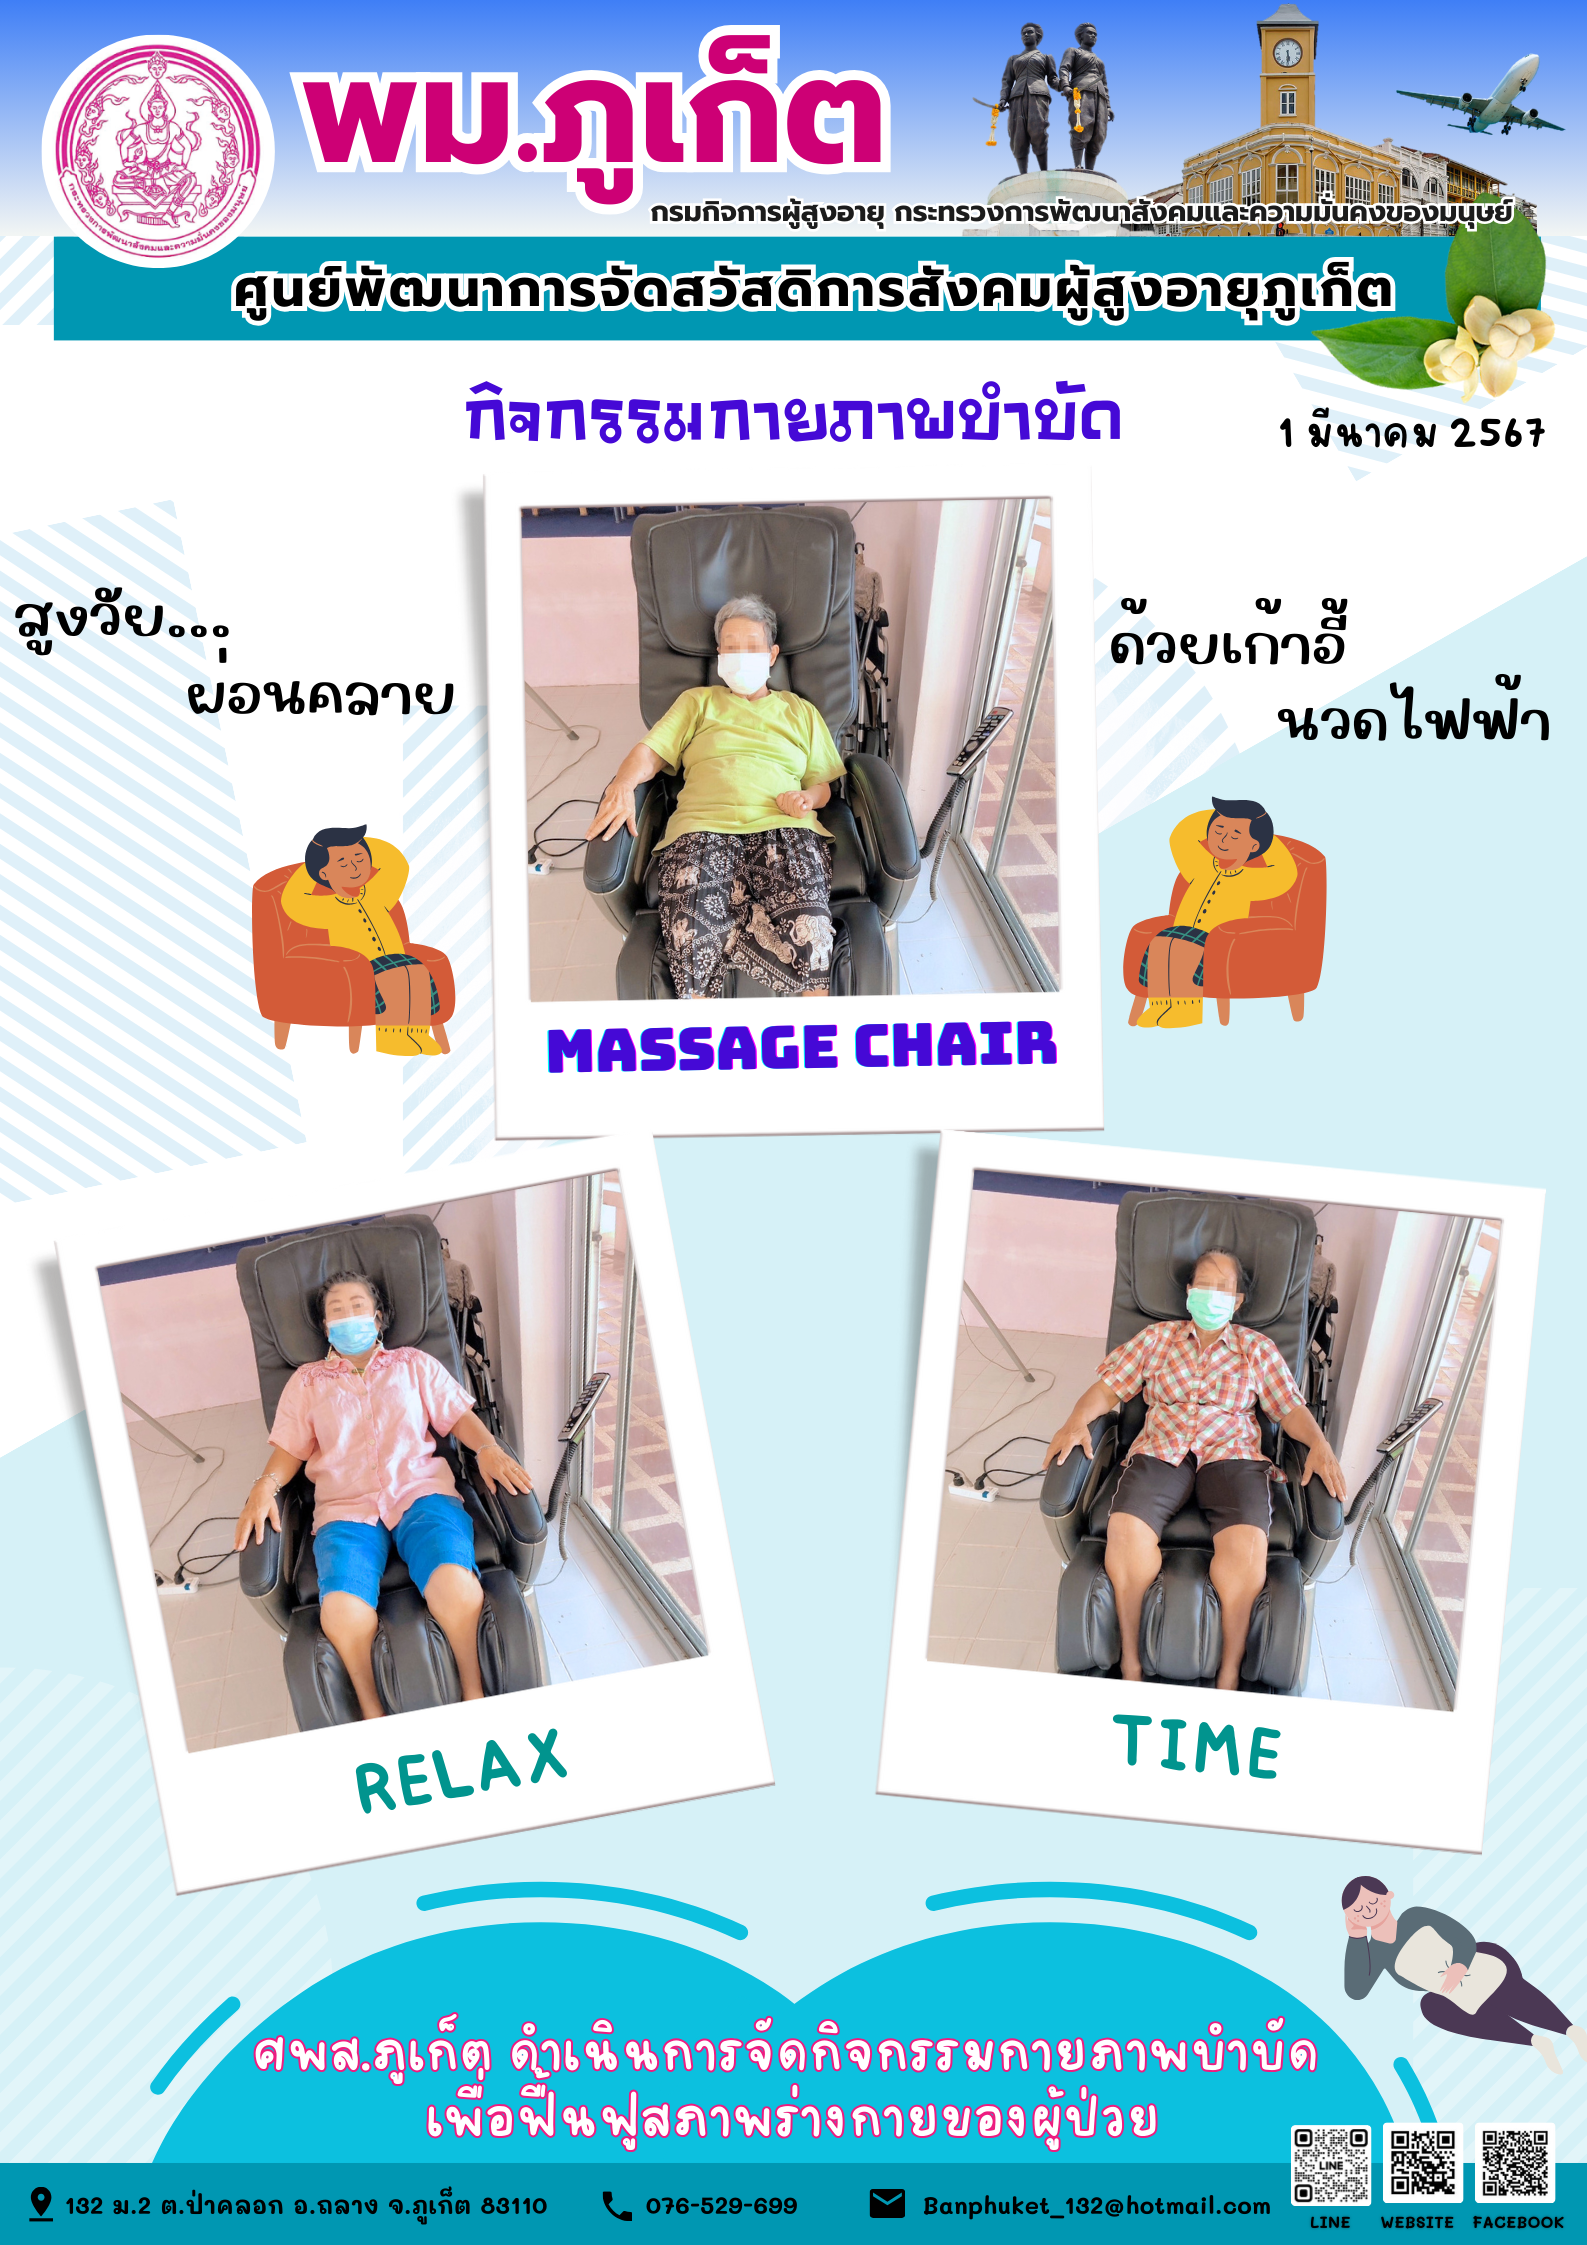 กิจกรรม กายภาพบำบัด Massage chair